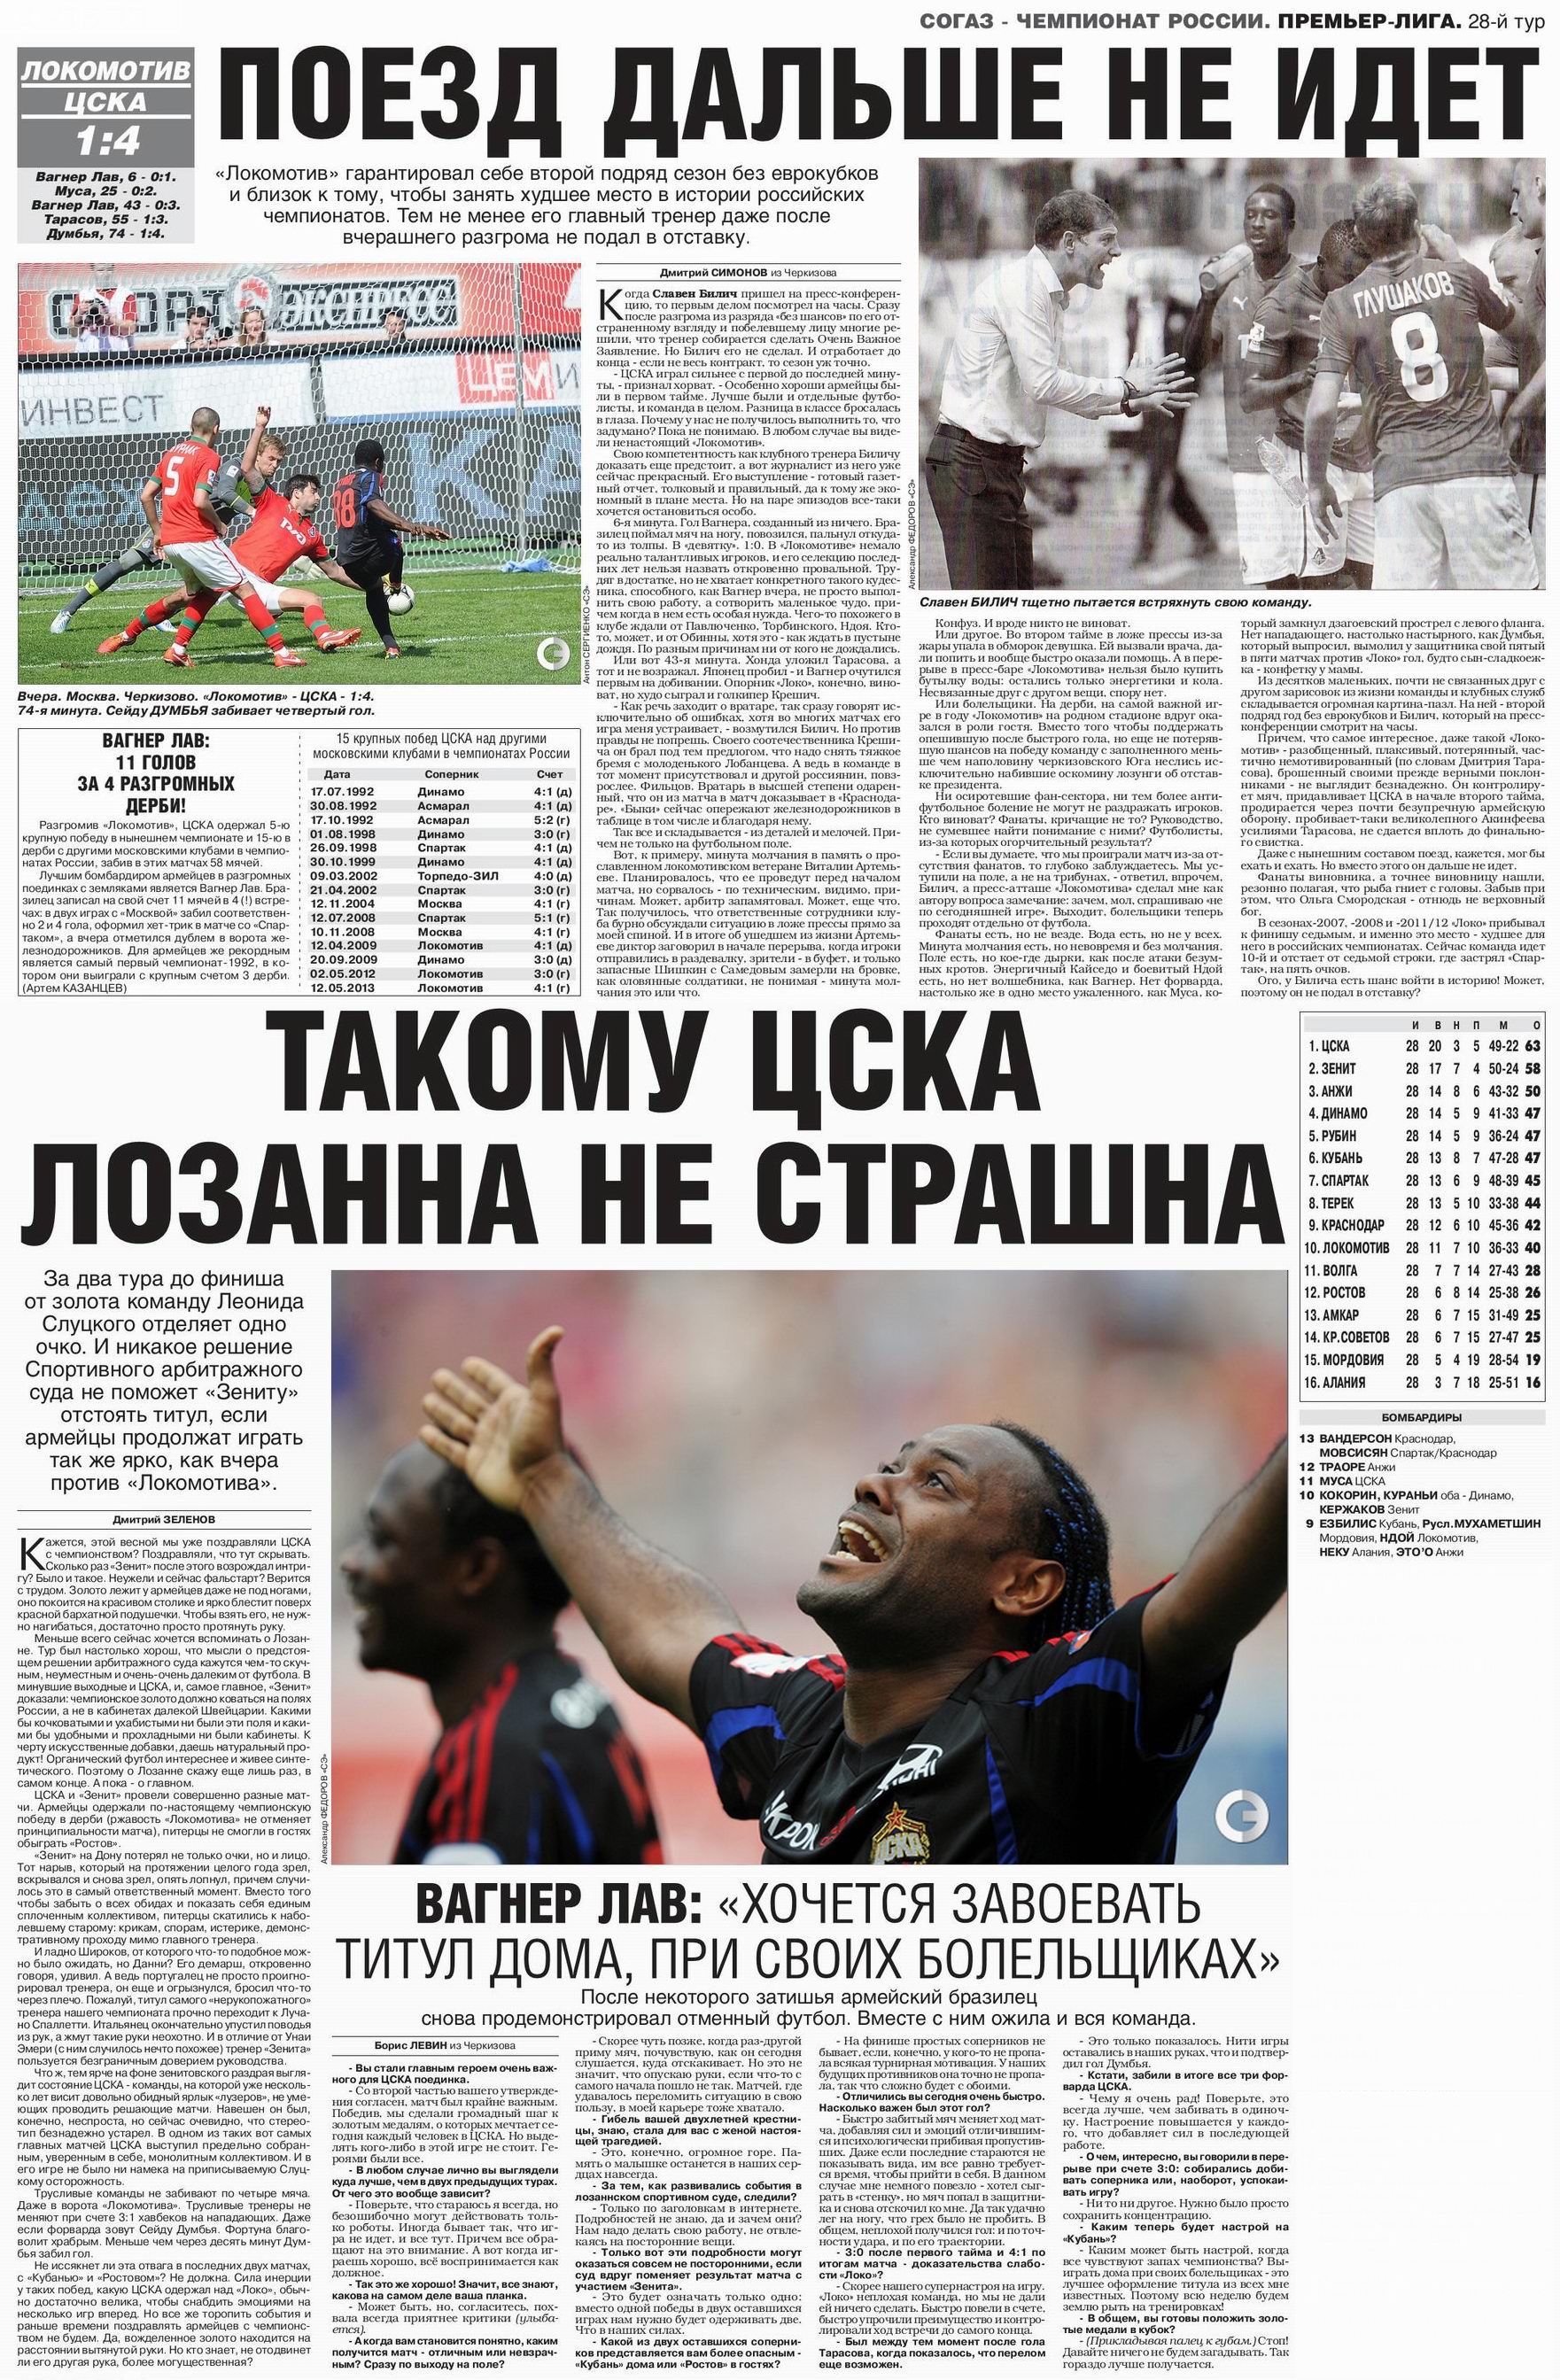 2013-05-12.LokomotivM-CSKA